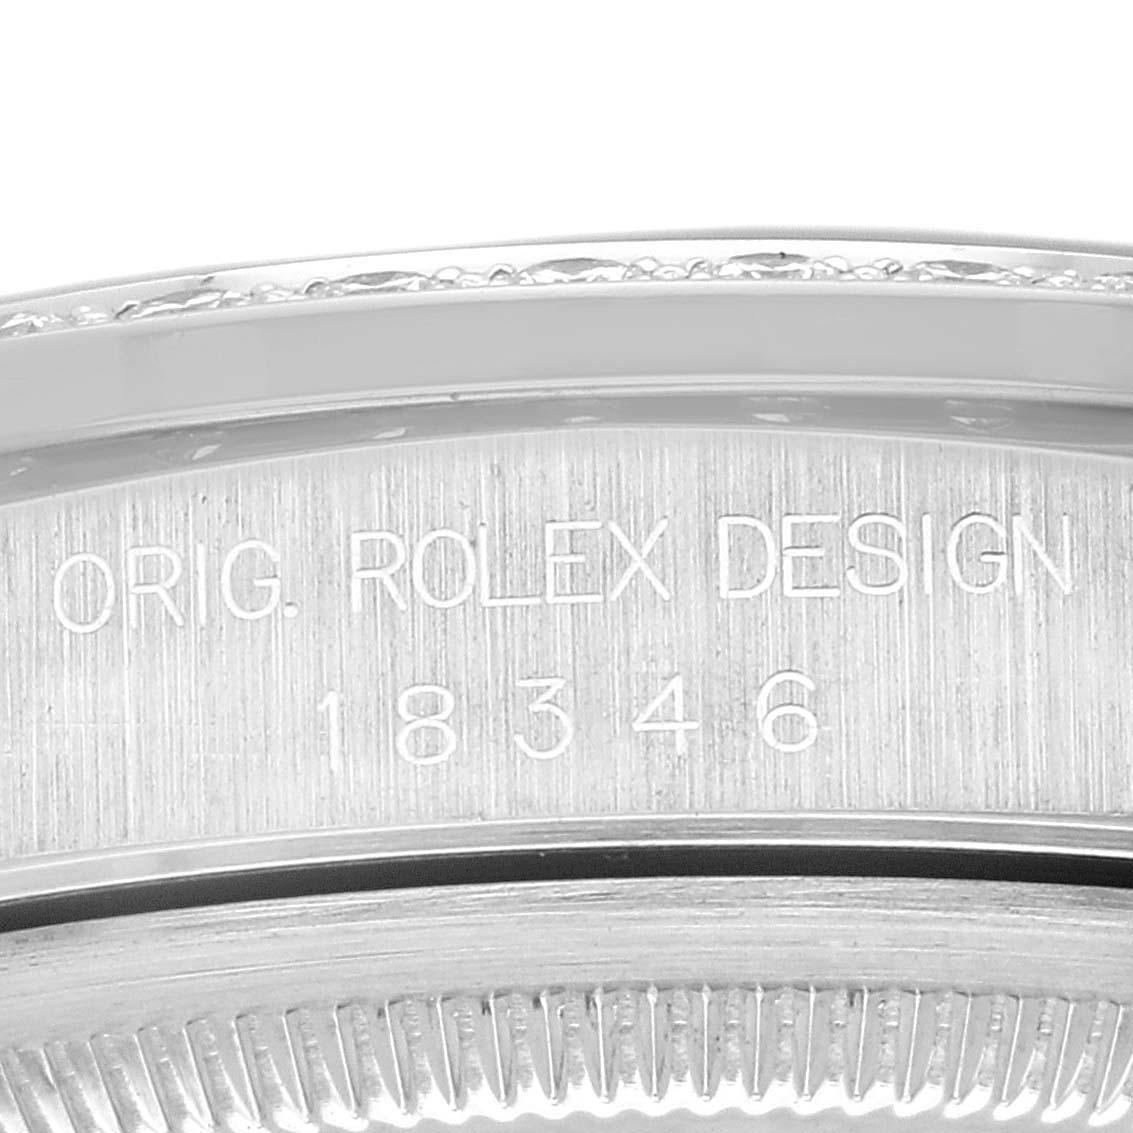 Rolex President Day-Date Platinum Blue Myriad Diamond Dial Montre homme 18346. Mouvement à remontage automatique certifié officiellement chronomètre. Boîtier oyster en platine de 36,0 mm de diamètre. Logo Rolex sur une couronne. Lunette en diamant